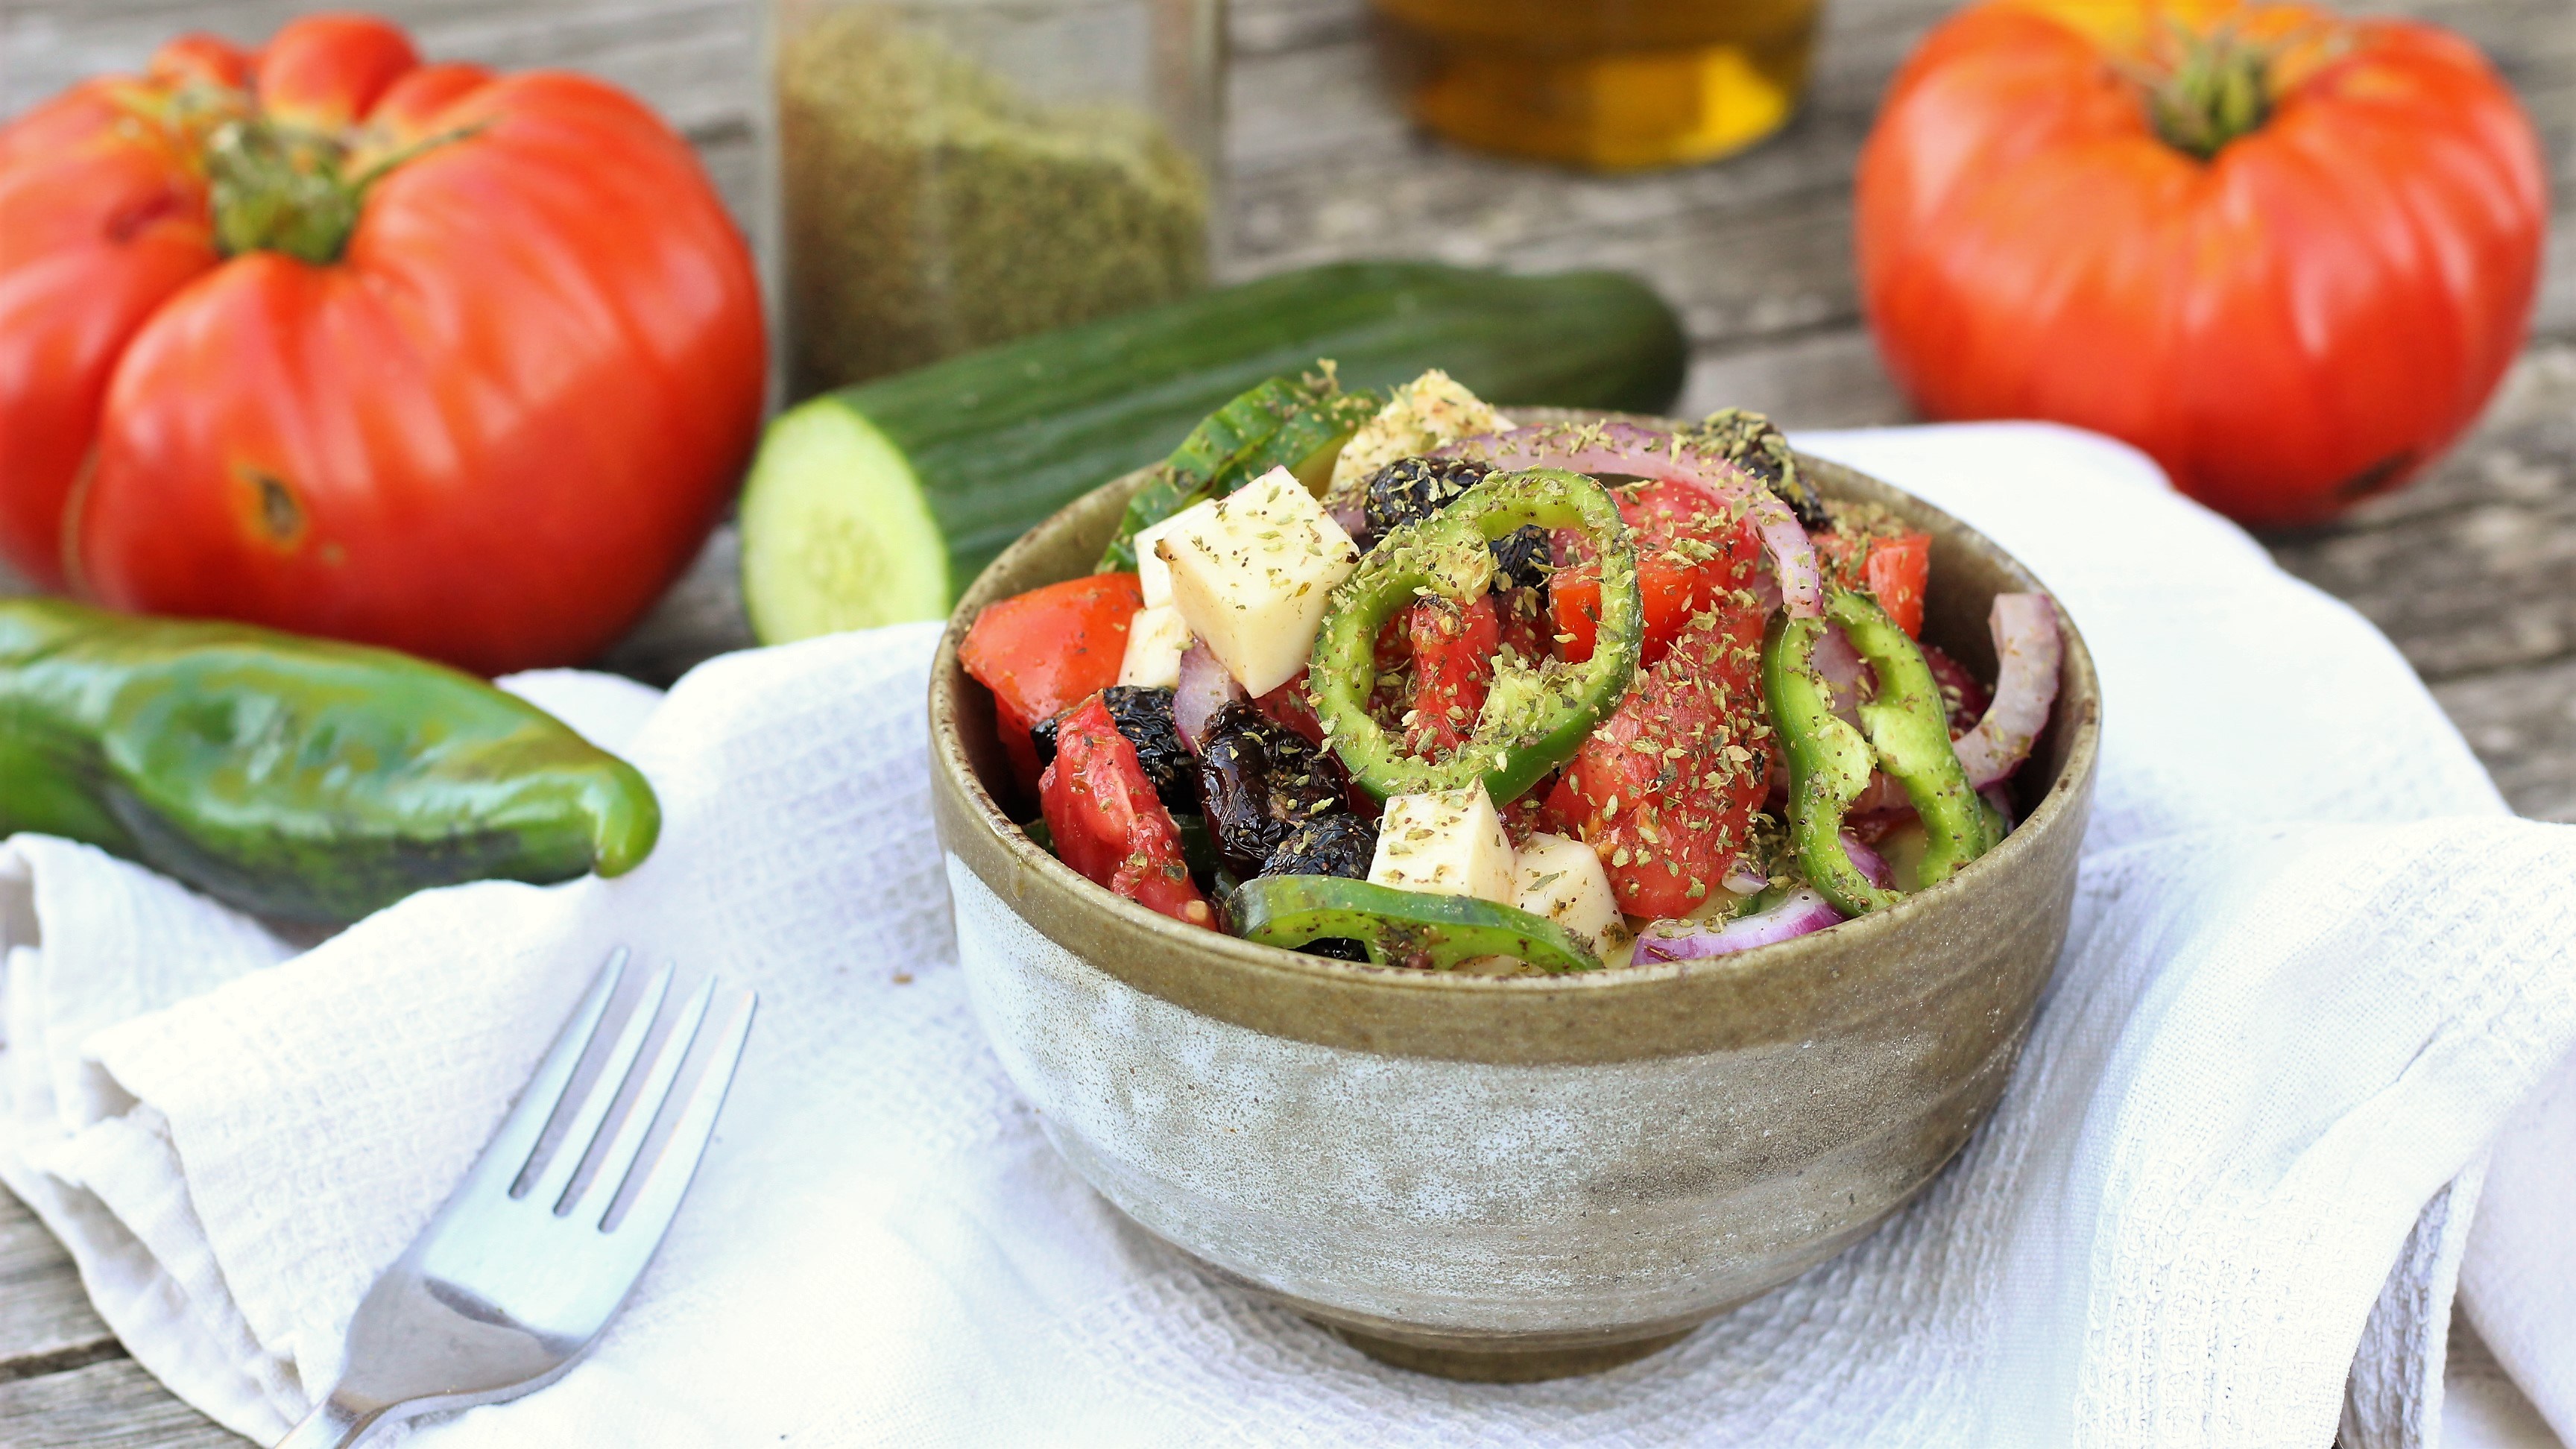 Salade grecque vegan (recette en vidéo) | Envie D'une Recette végétalienne?